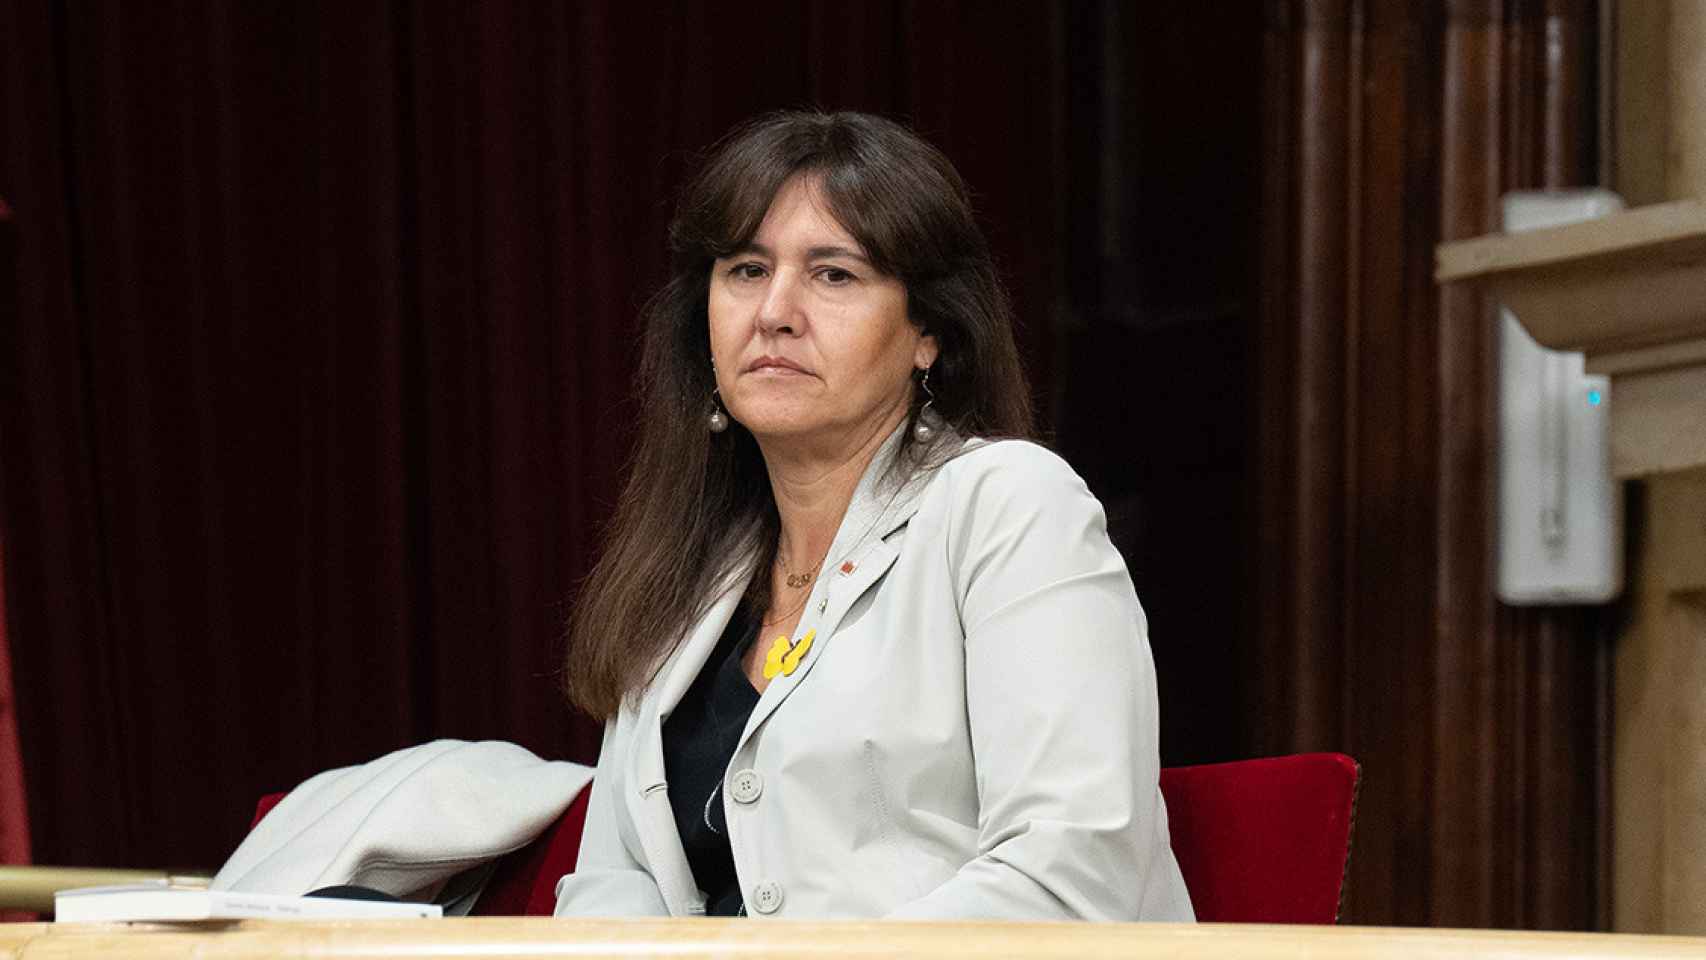 Laura Borràs, presidenta de Junts, quien presentó una recusación contra el magistrado Jesús María Barrientos / DAVID ZORRAKINO - EUROPA PRESS